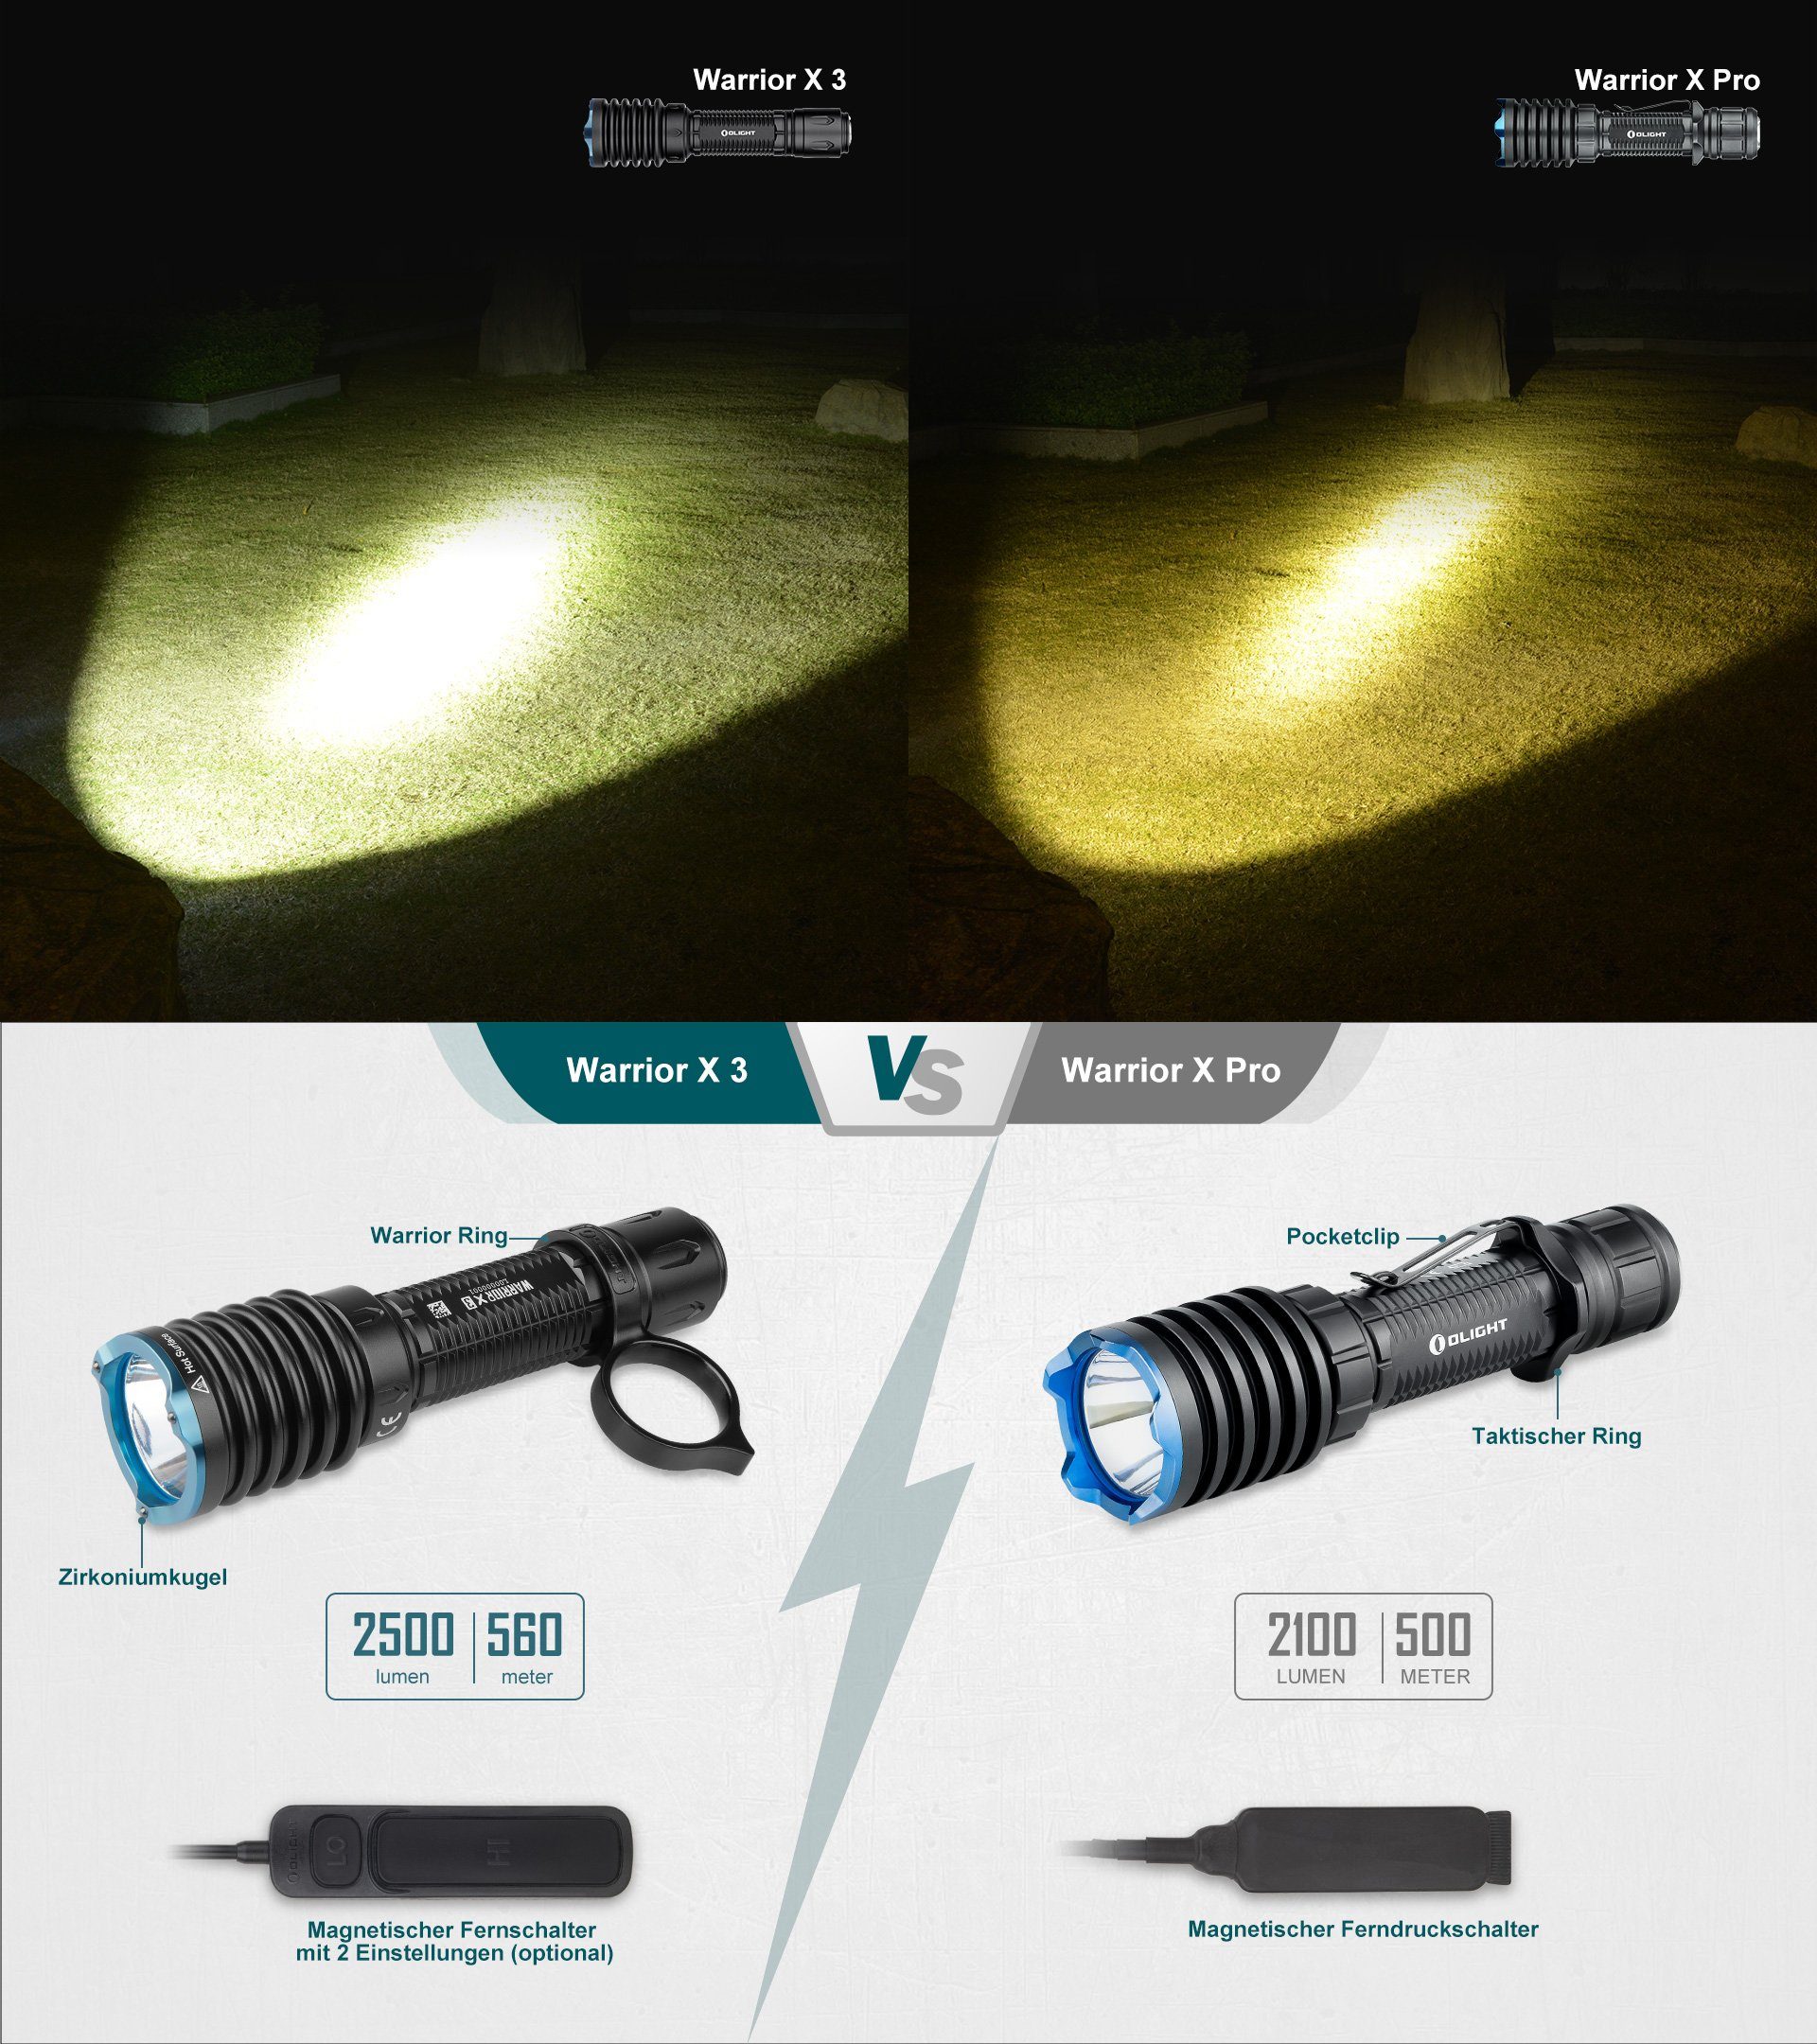 Leuchtweite Meter 560 LED 3 X Warrior Taschenlampe, schwarz 2500 OLIGHT Lumen Taschenlampe taktische